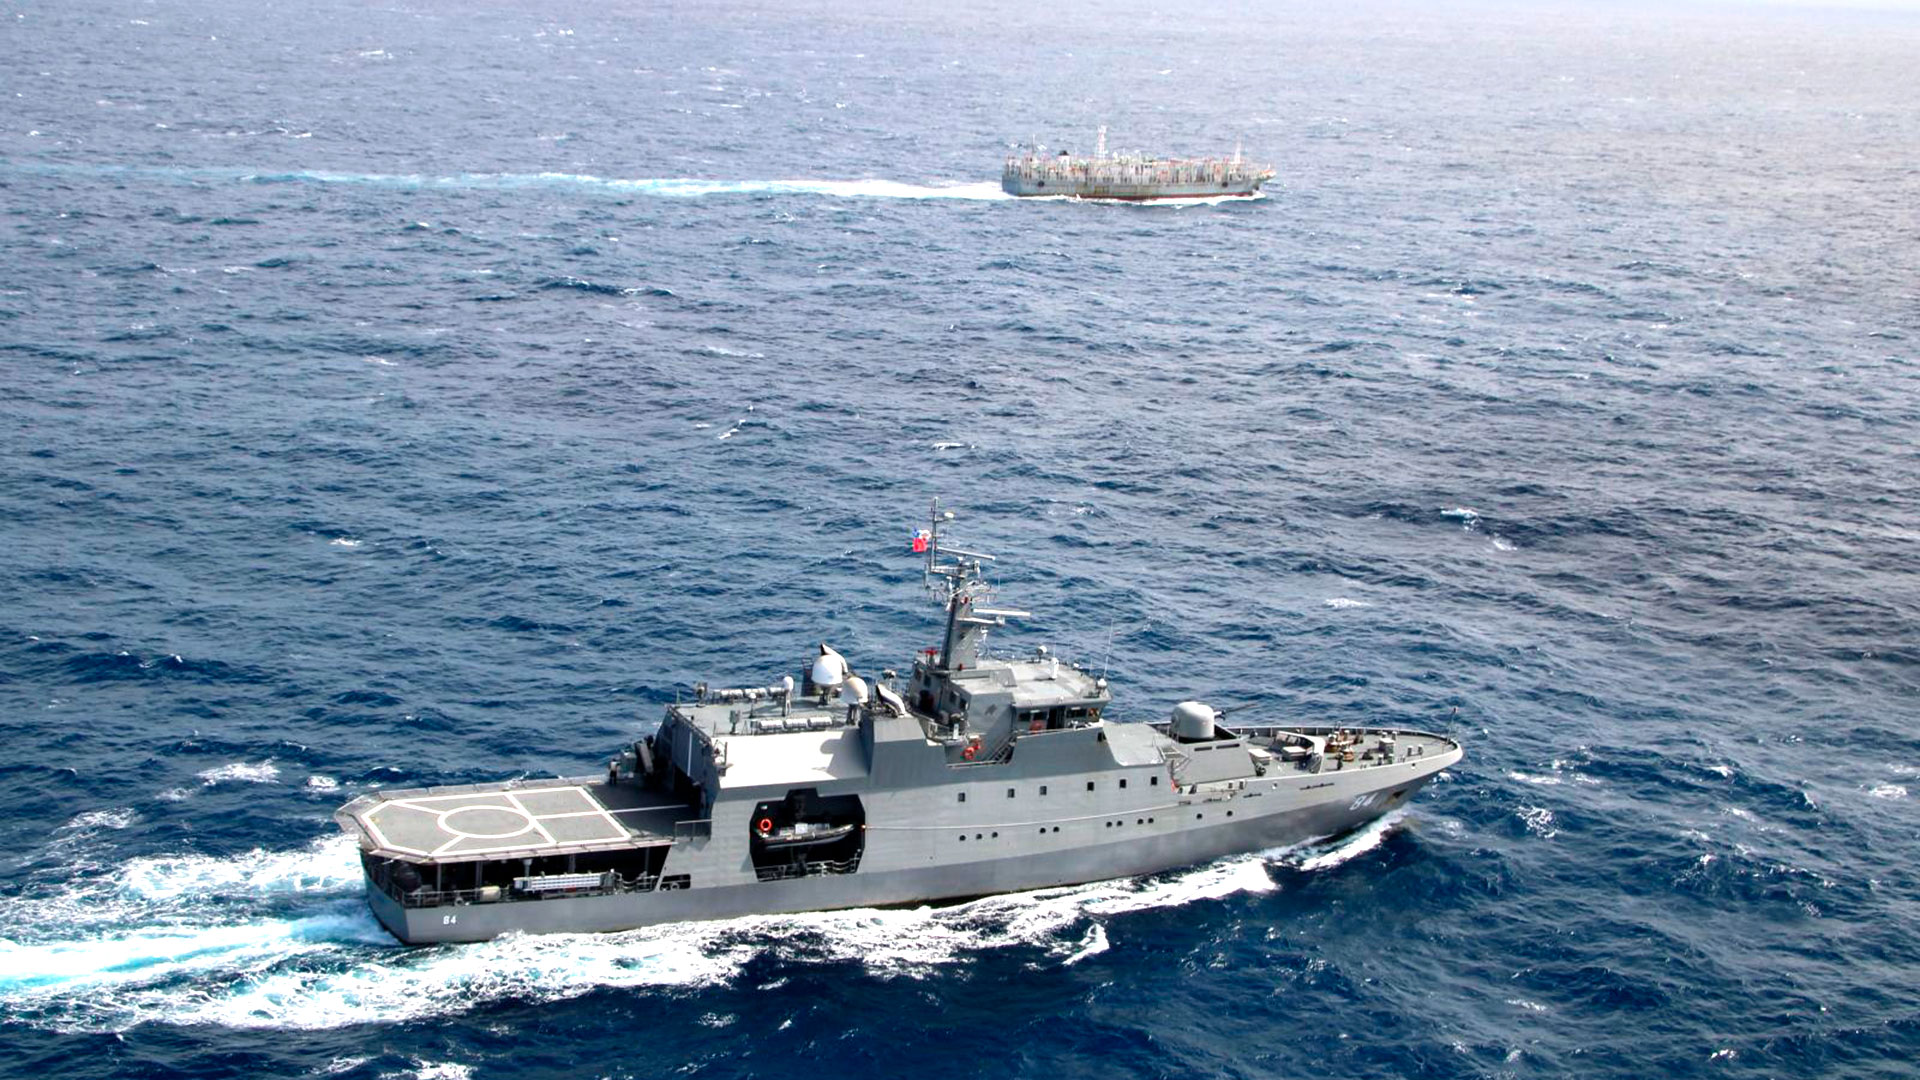 La Armada de Chile ha ido aumentando progresivamente su dotación de buques, aviones y helicópteros para mantener mayor fiscalización sobre la escuadra de barcos pesqueros chinos que transitan en sus aguas territoriales